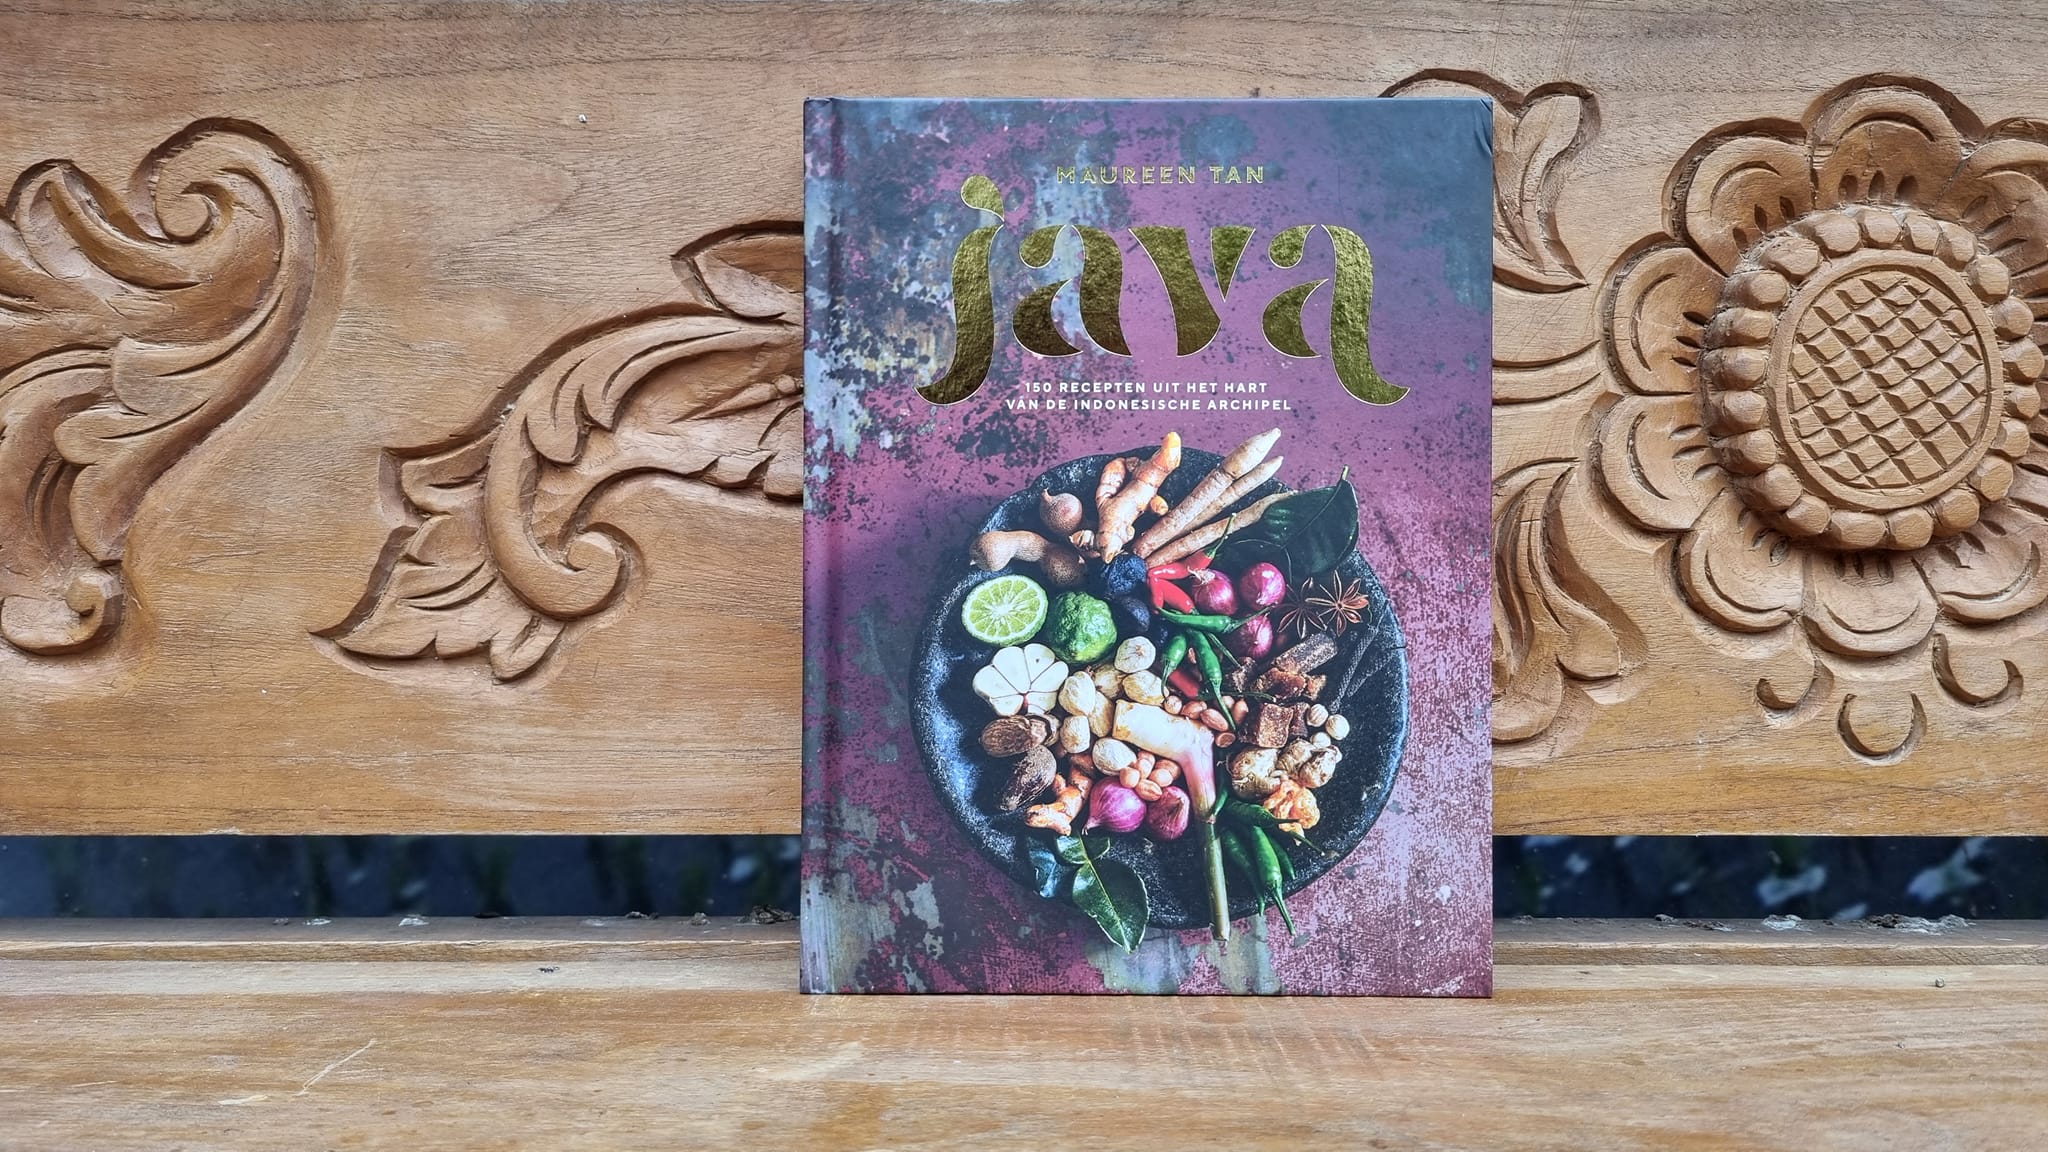 In dit prachtige kookboek van Maureen Tan, duikt ze nog dieper in de Javaanse eetcultuur. De Javaanse keuken is die van haar ouders. 